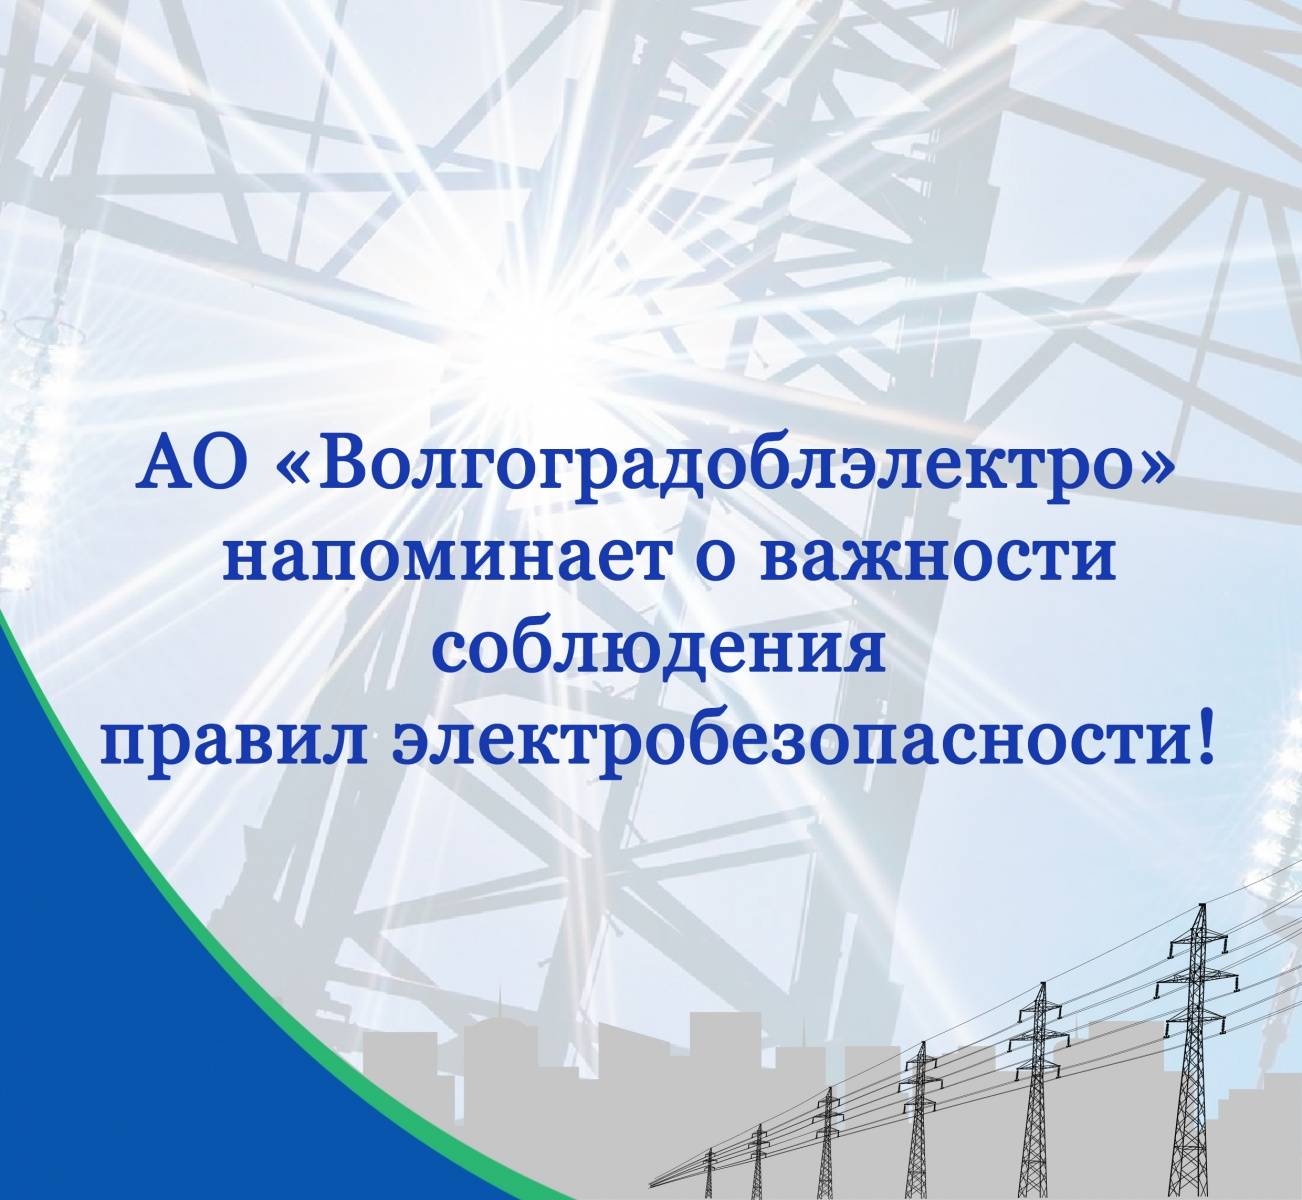 Энергетики АО "Волгоградоблэлектро" напоминают о важности соблюдения правил электробезопасности